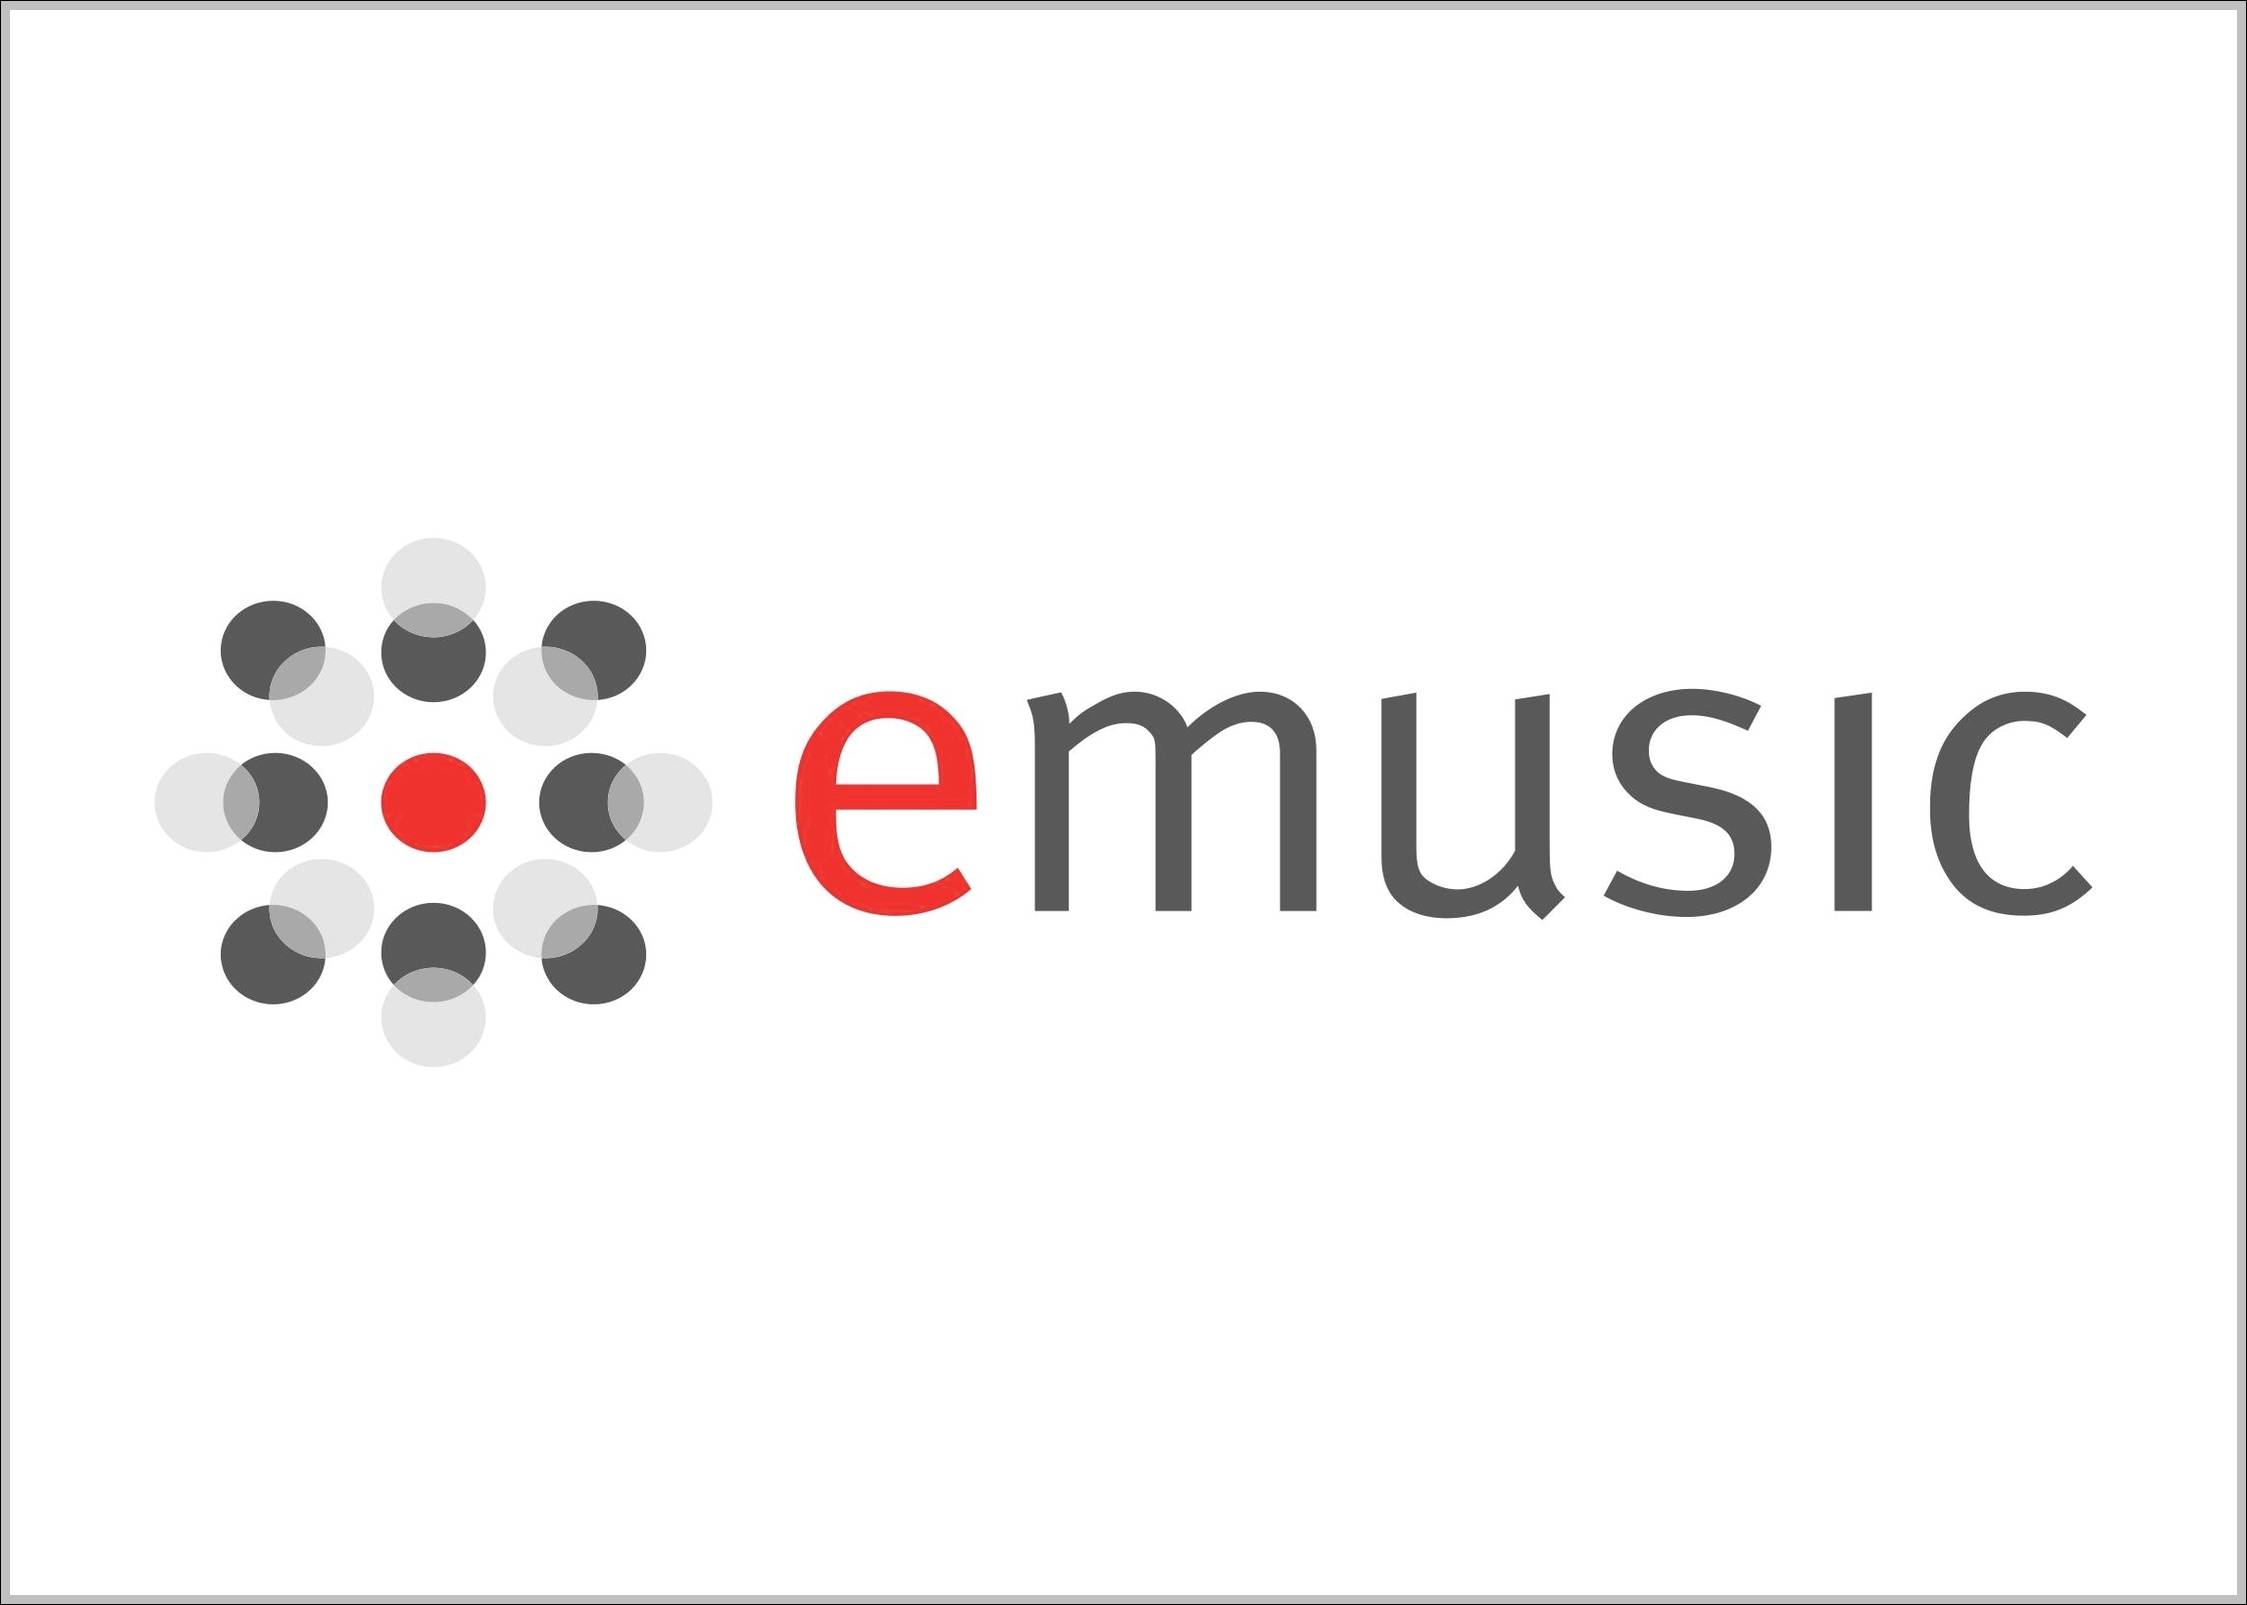 eMusic logo